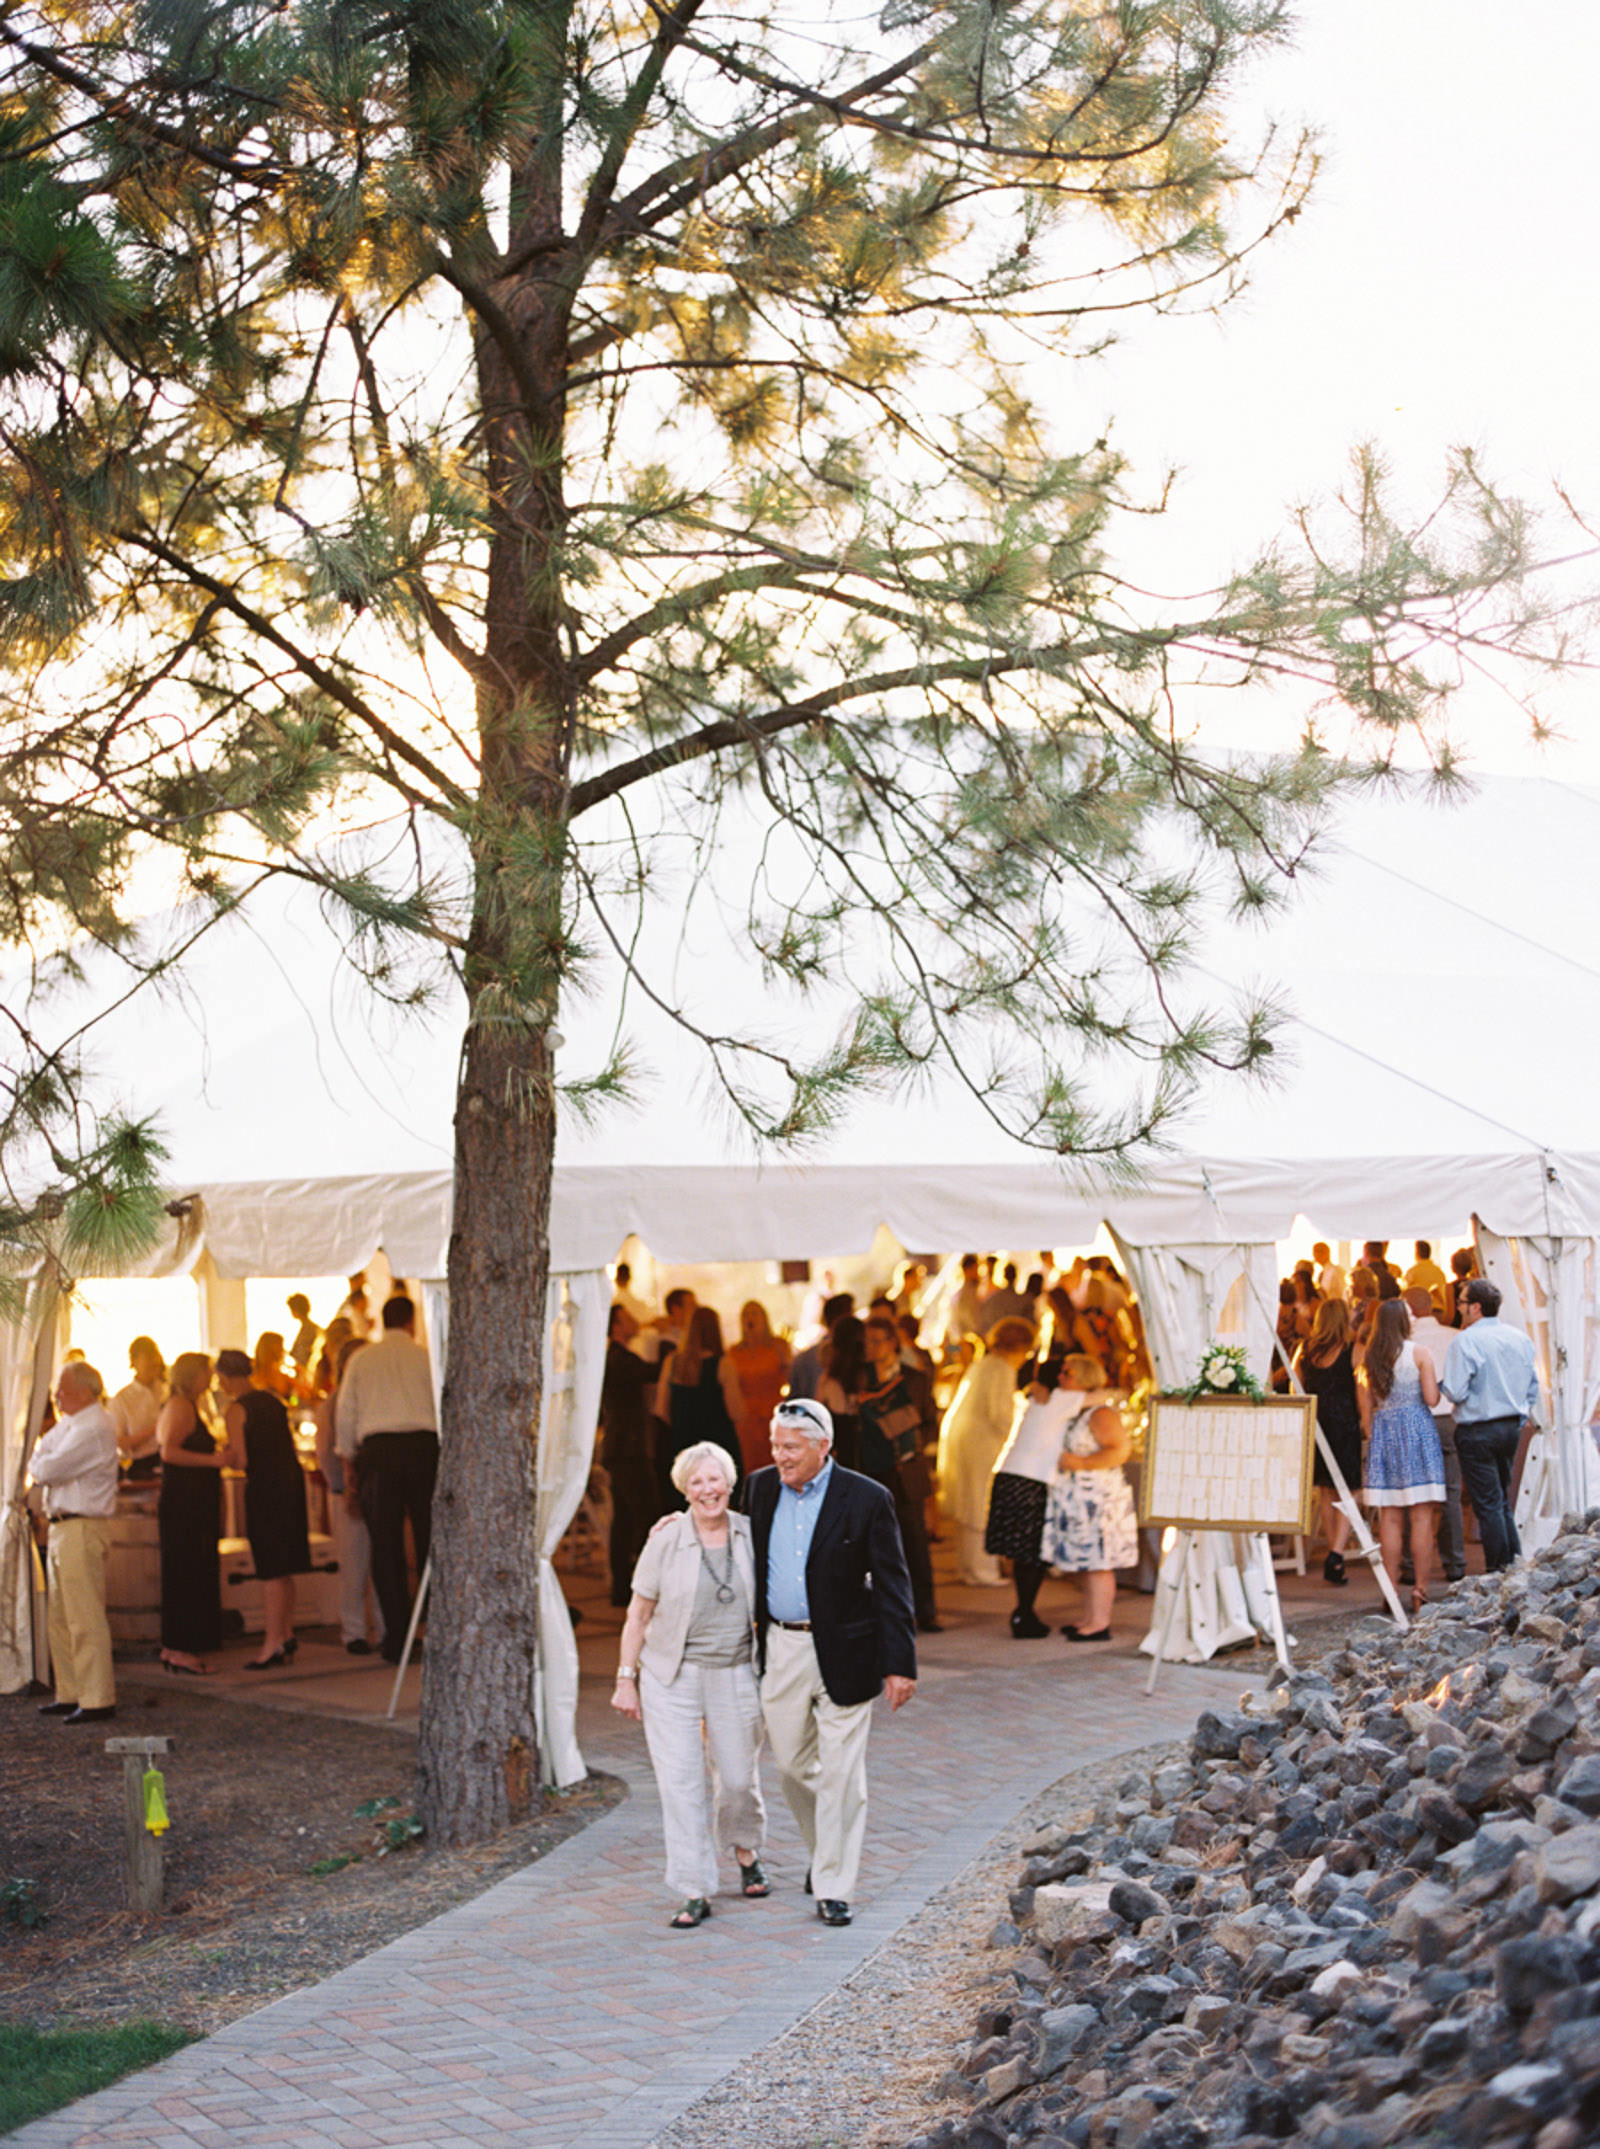 Outdoor Wedding Venue in Spokane, Arbor Crest winery photographed by Spokane Wedding Photographer Anna Peters